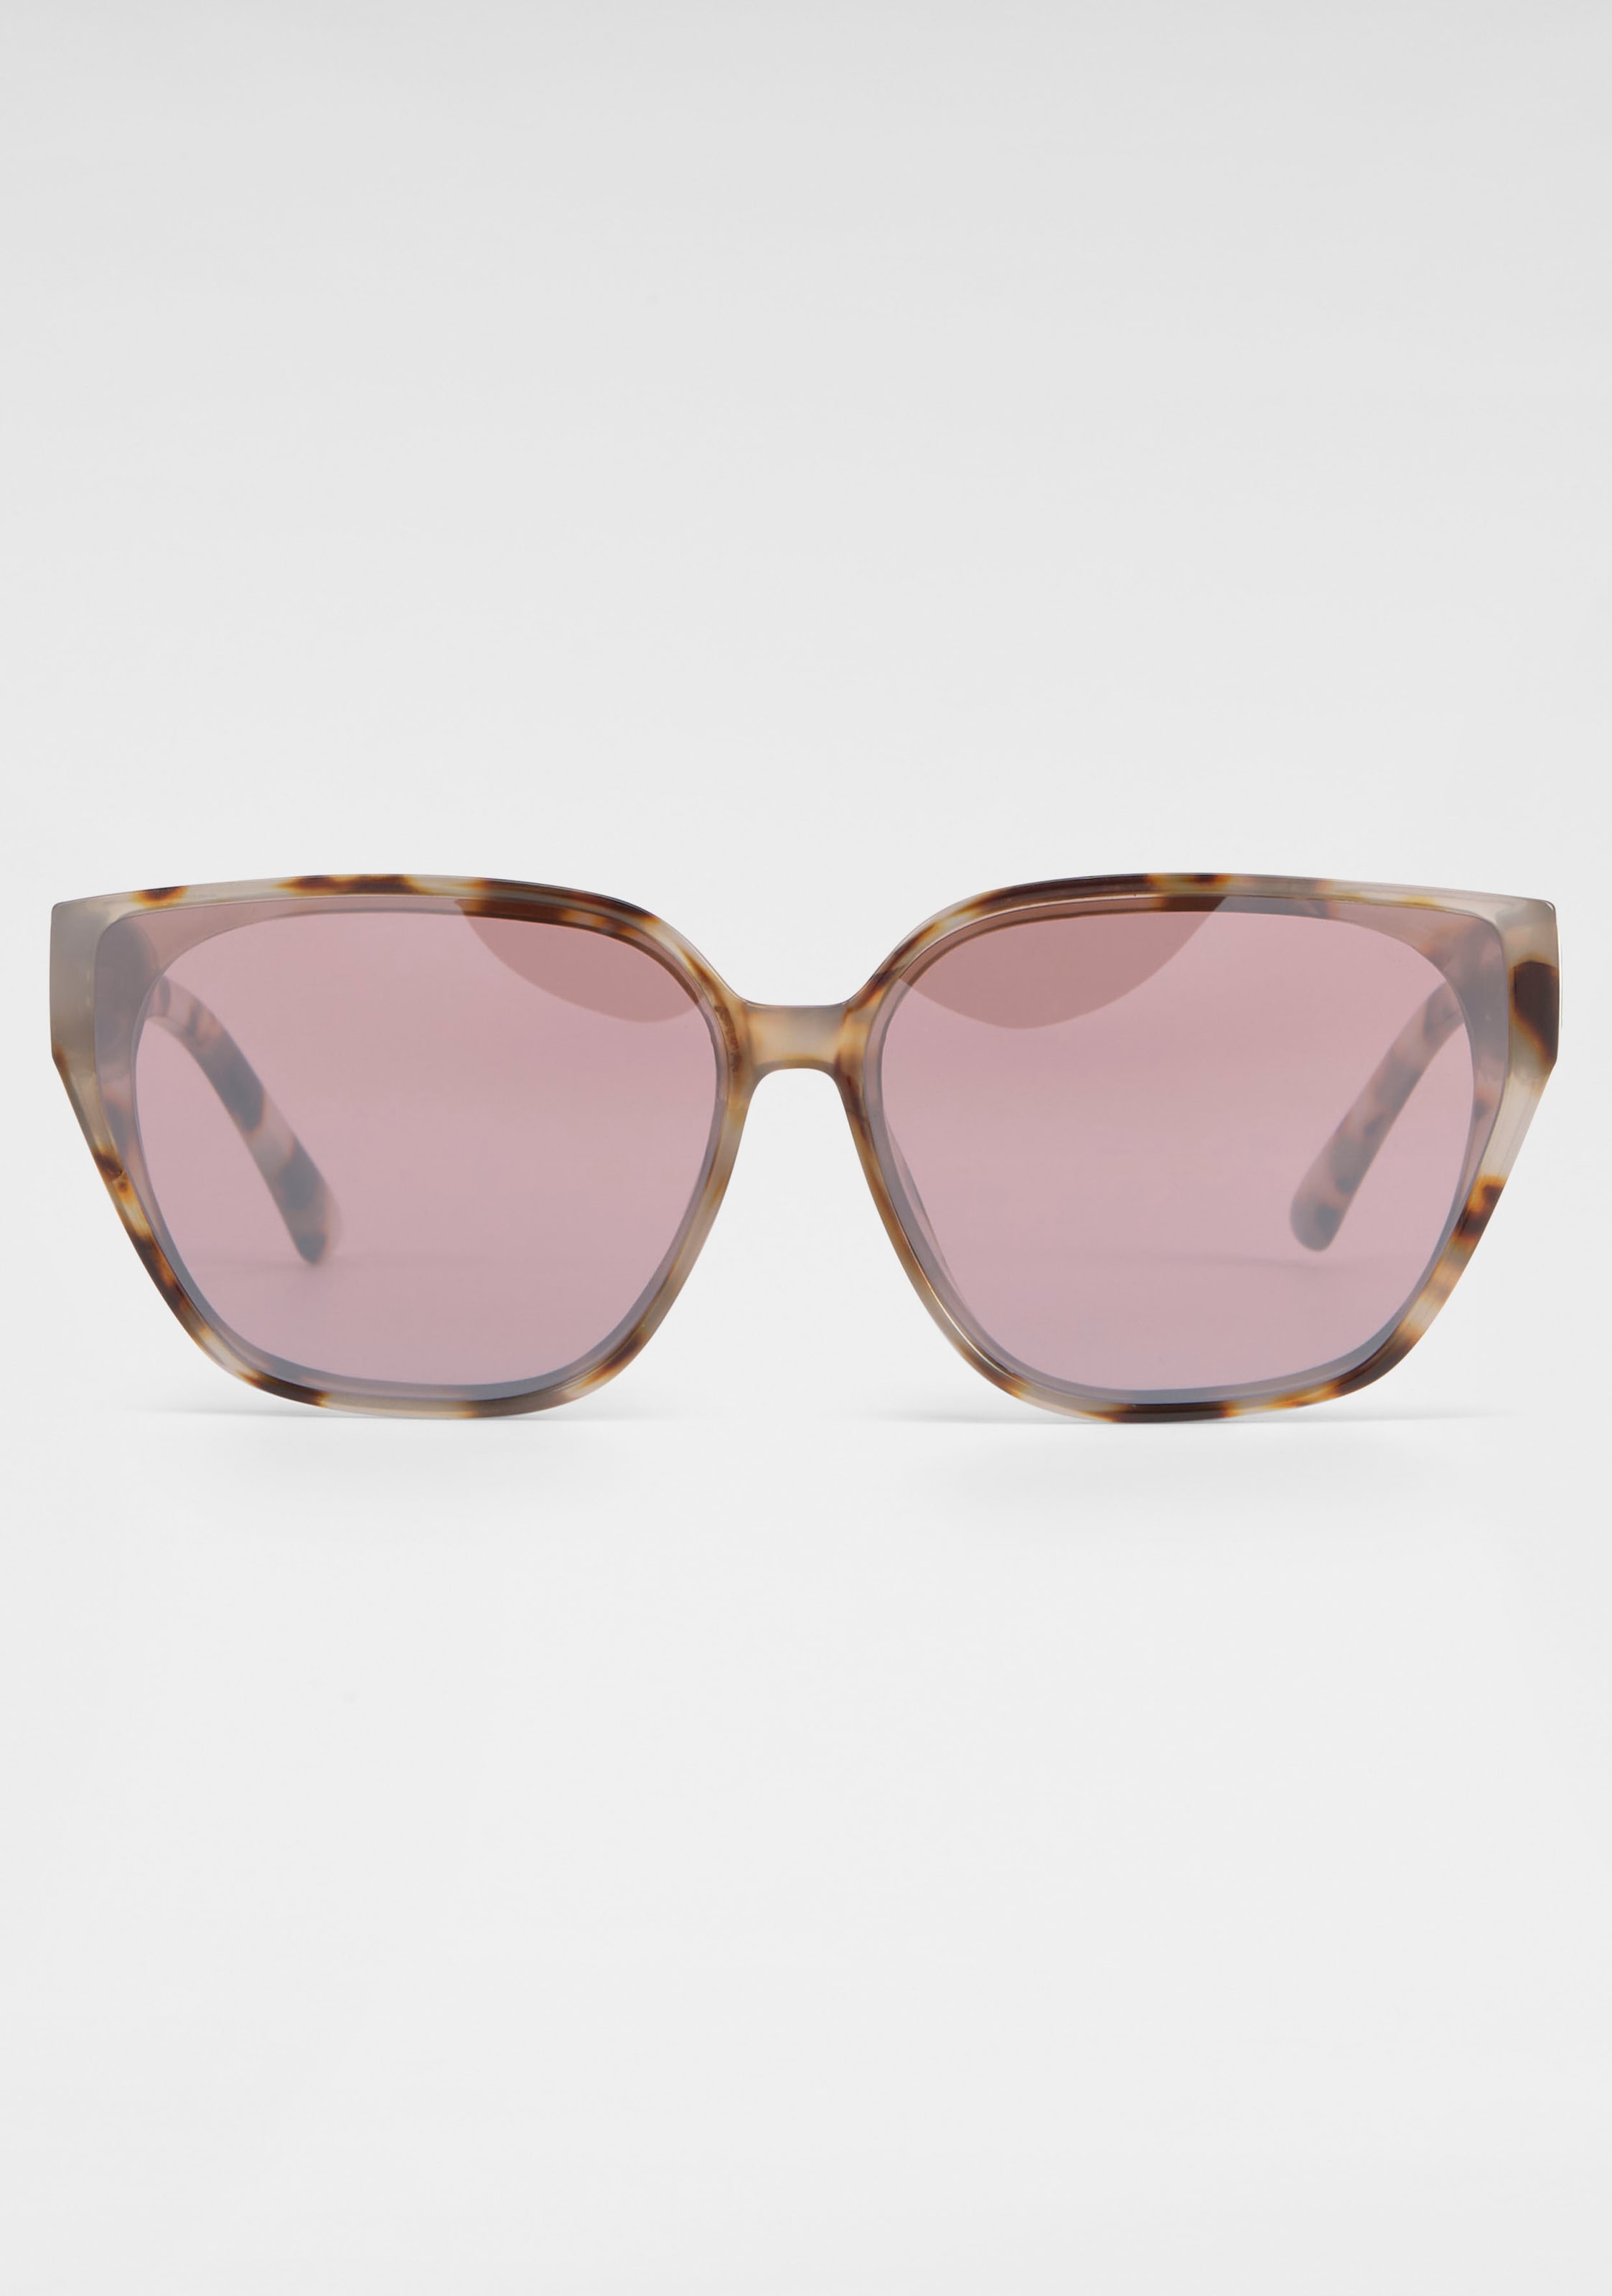 catwalk Eyewear Sonnenbrille, Leo-Optik für kaufen | BAUR